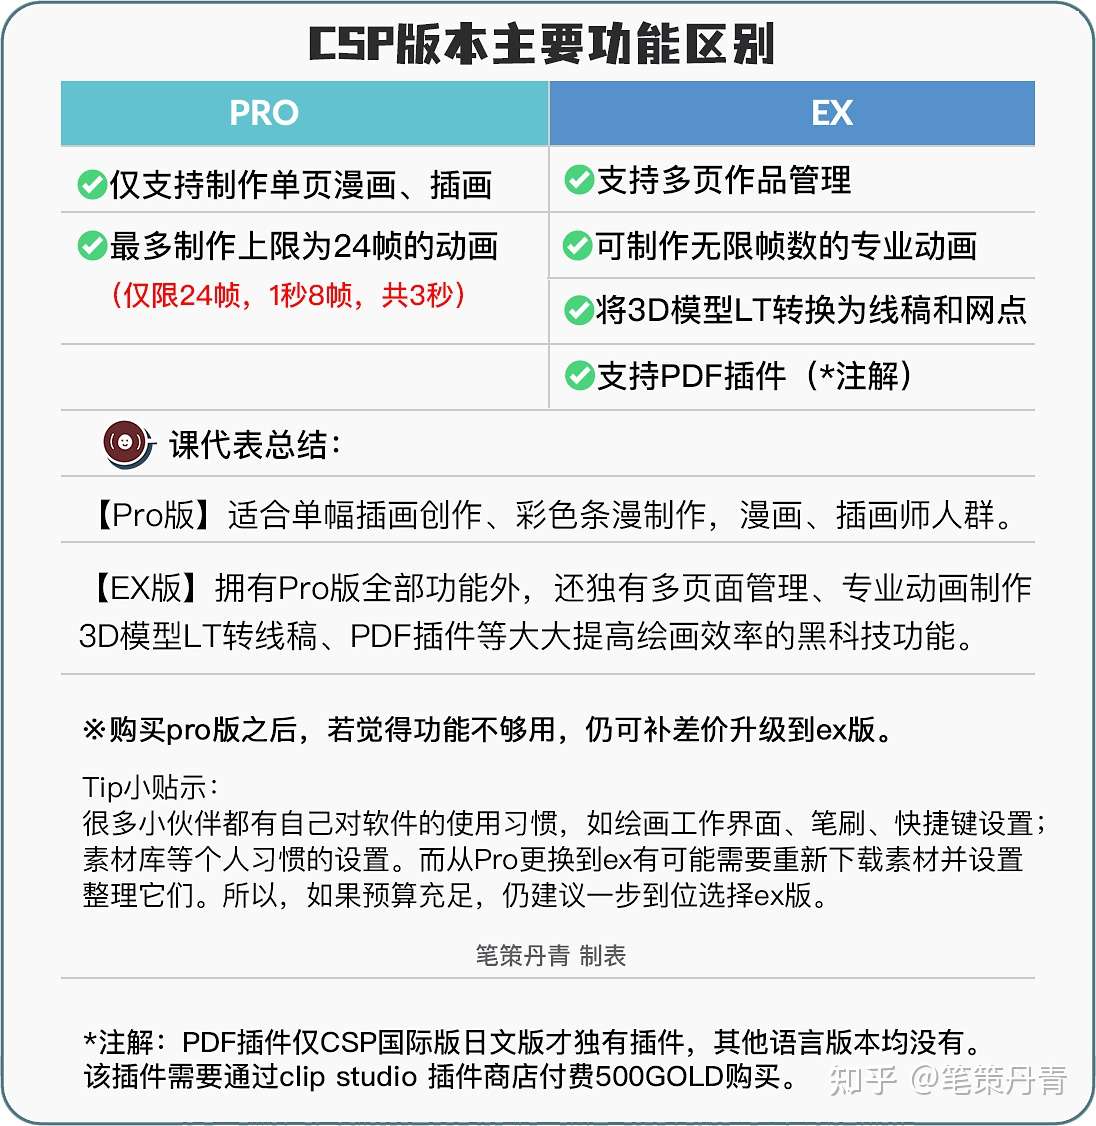 Csp国际版pro版本和ex版本有什么区别 Clipstudiopaint两者功能不同之处是什么 中国版优动漫paint个人版和专业版如何选择 知乎